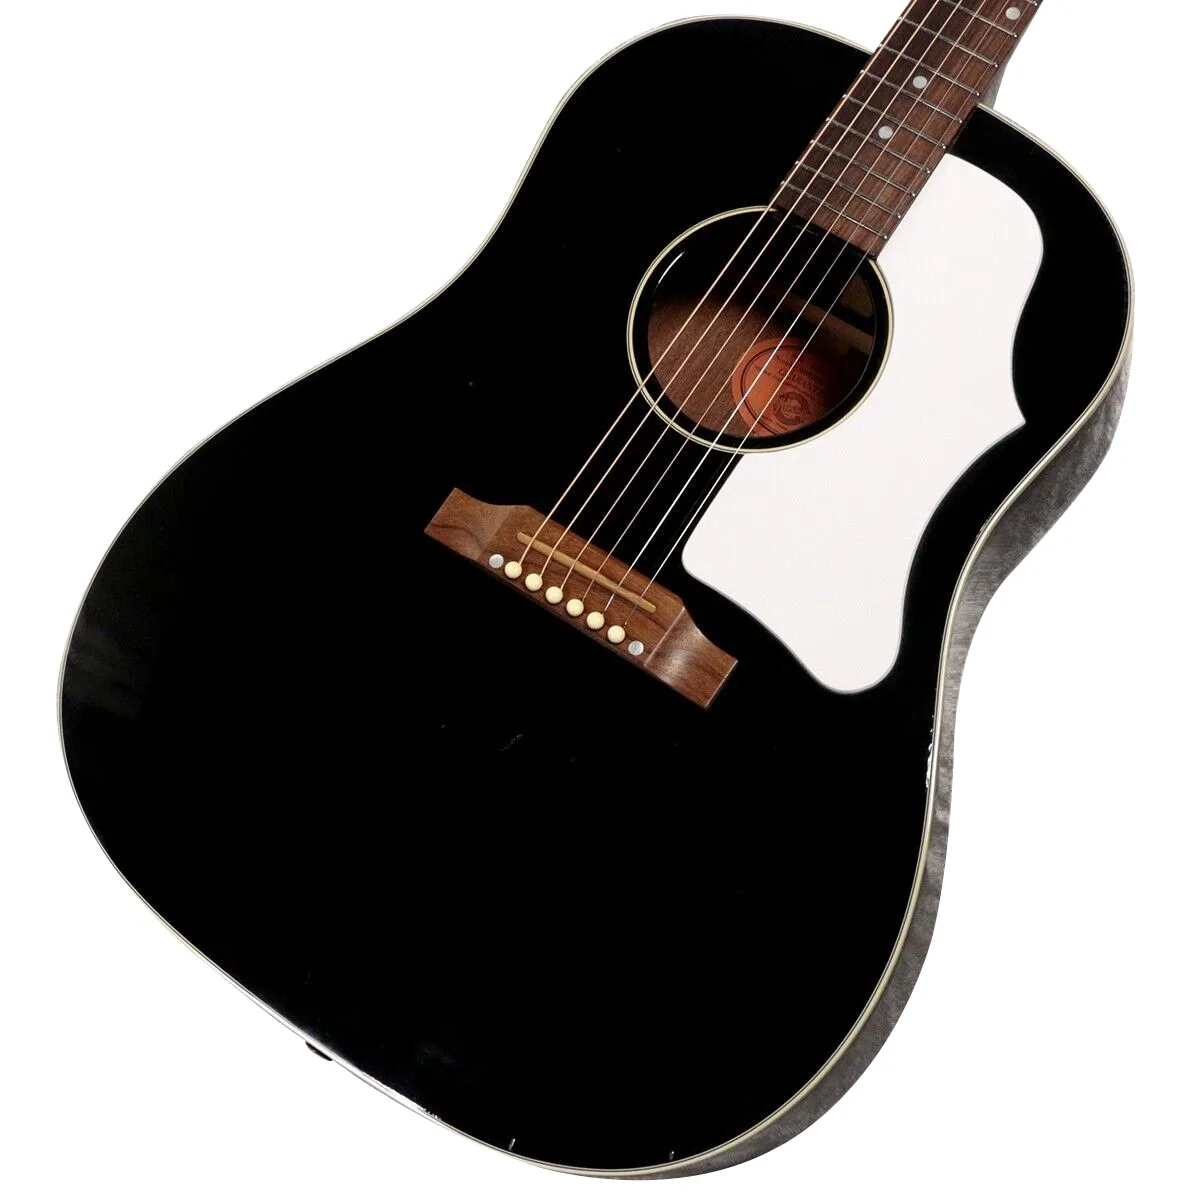 J45 Ebbenhout Akoestische gitaar F/S zoals op de foto's